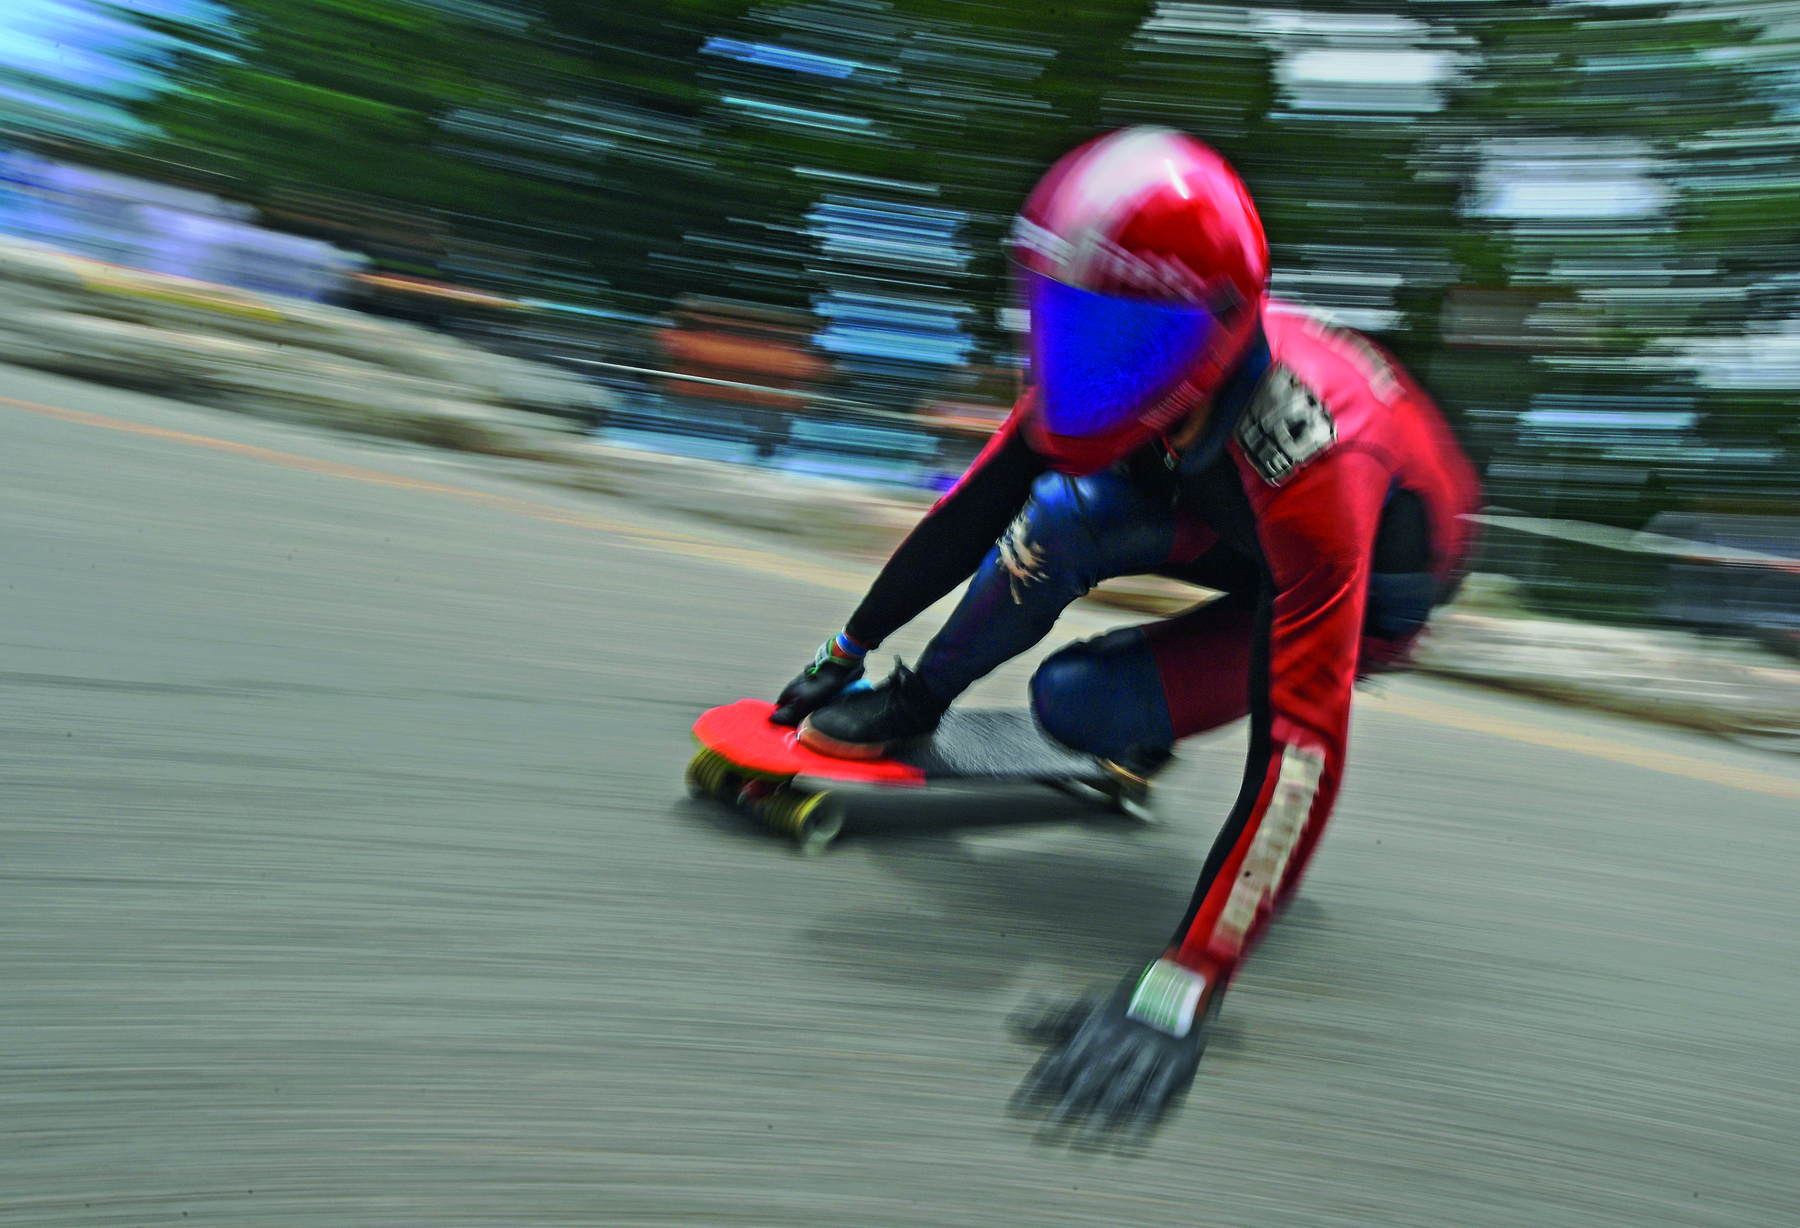 Fotografia. Pessoa usando capacete vermelho espelhado, camiseta vermelha e tênis pretos sobre um skate. Ela está agachada, com a mão direita no skate e a mão esquerda ao lado. A fotografia nos permite concluir que ela desce por um terreno em grande velocidade.